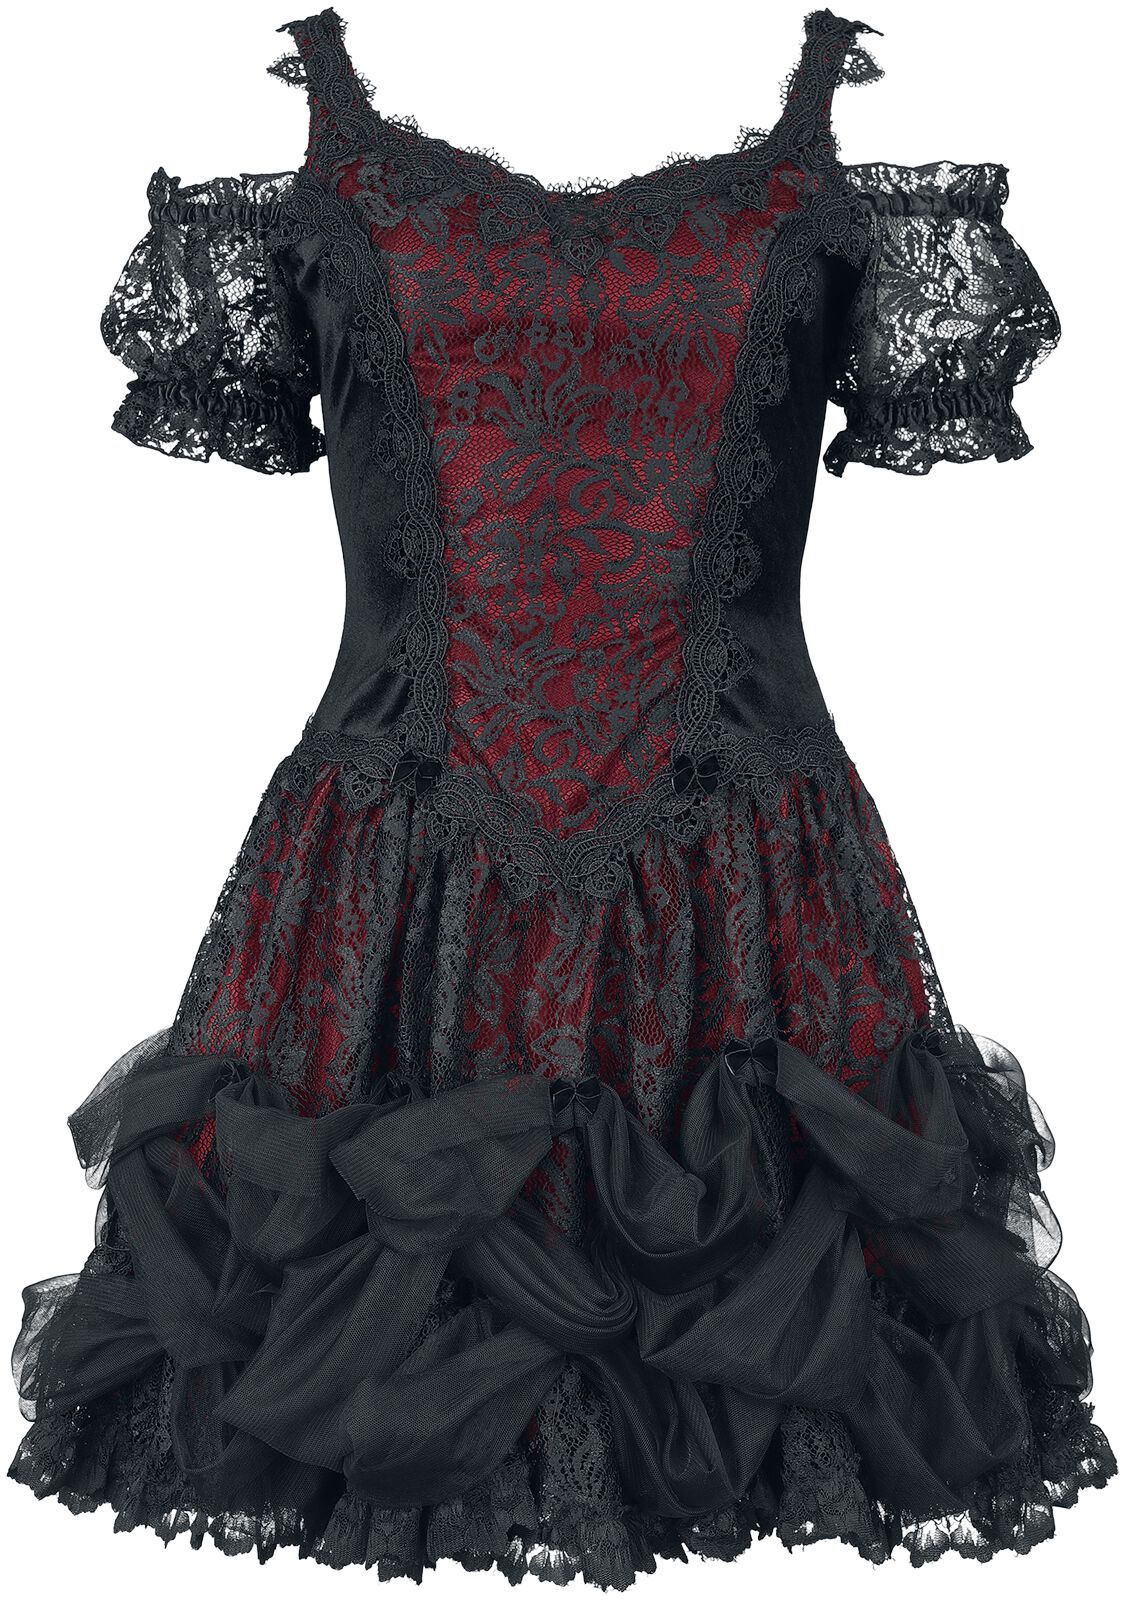 Sinister Gothic - Mittelalter Kurzes Kleid - Gothic Dress - XS bis XXL - für Damen - Größe XL - schwarz/rot